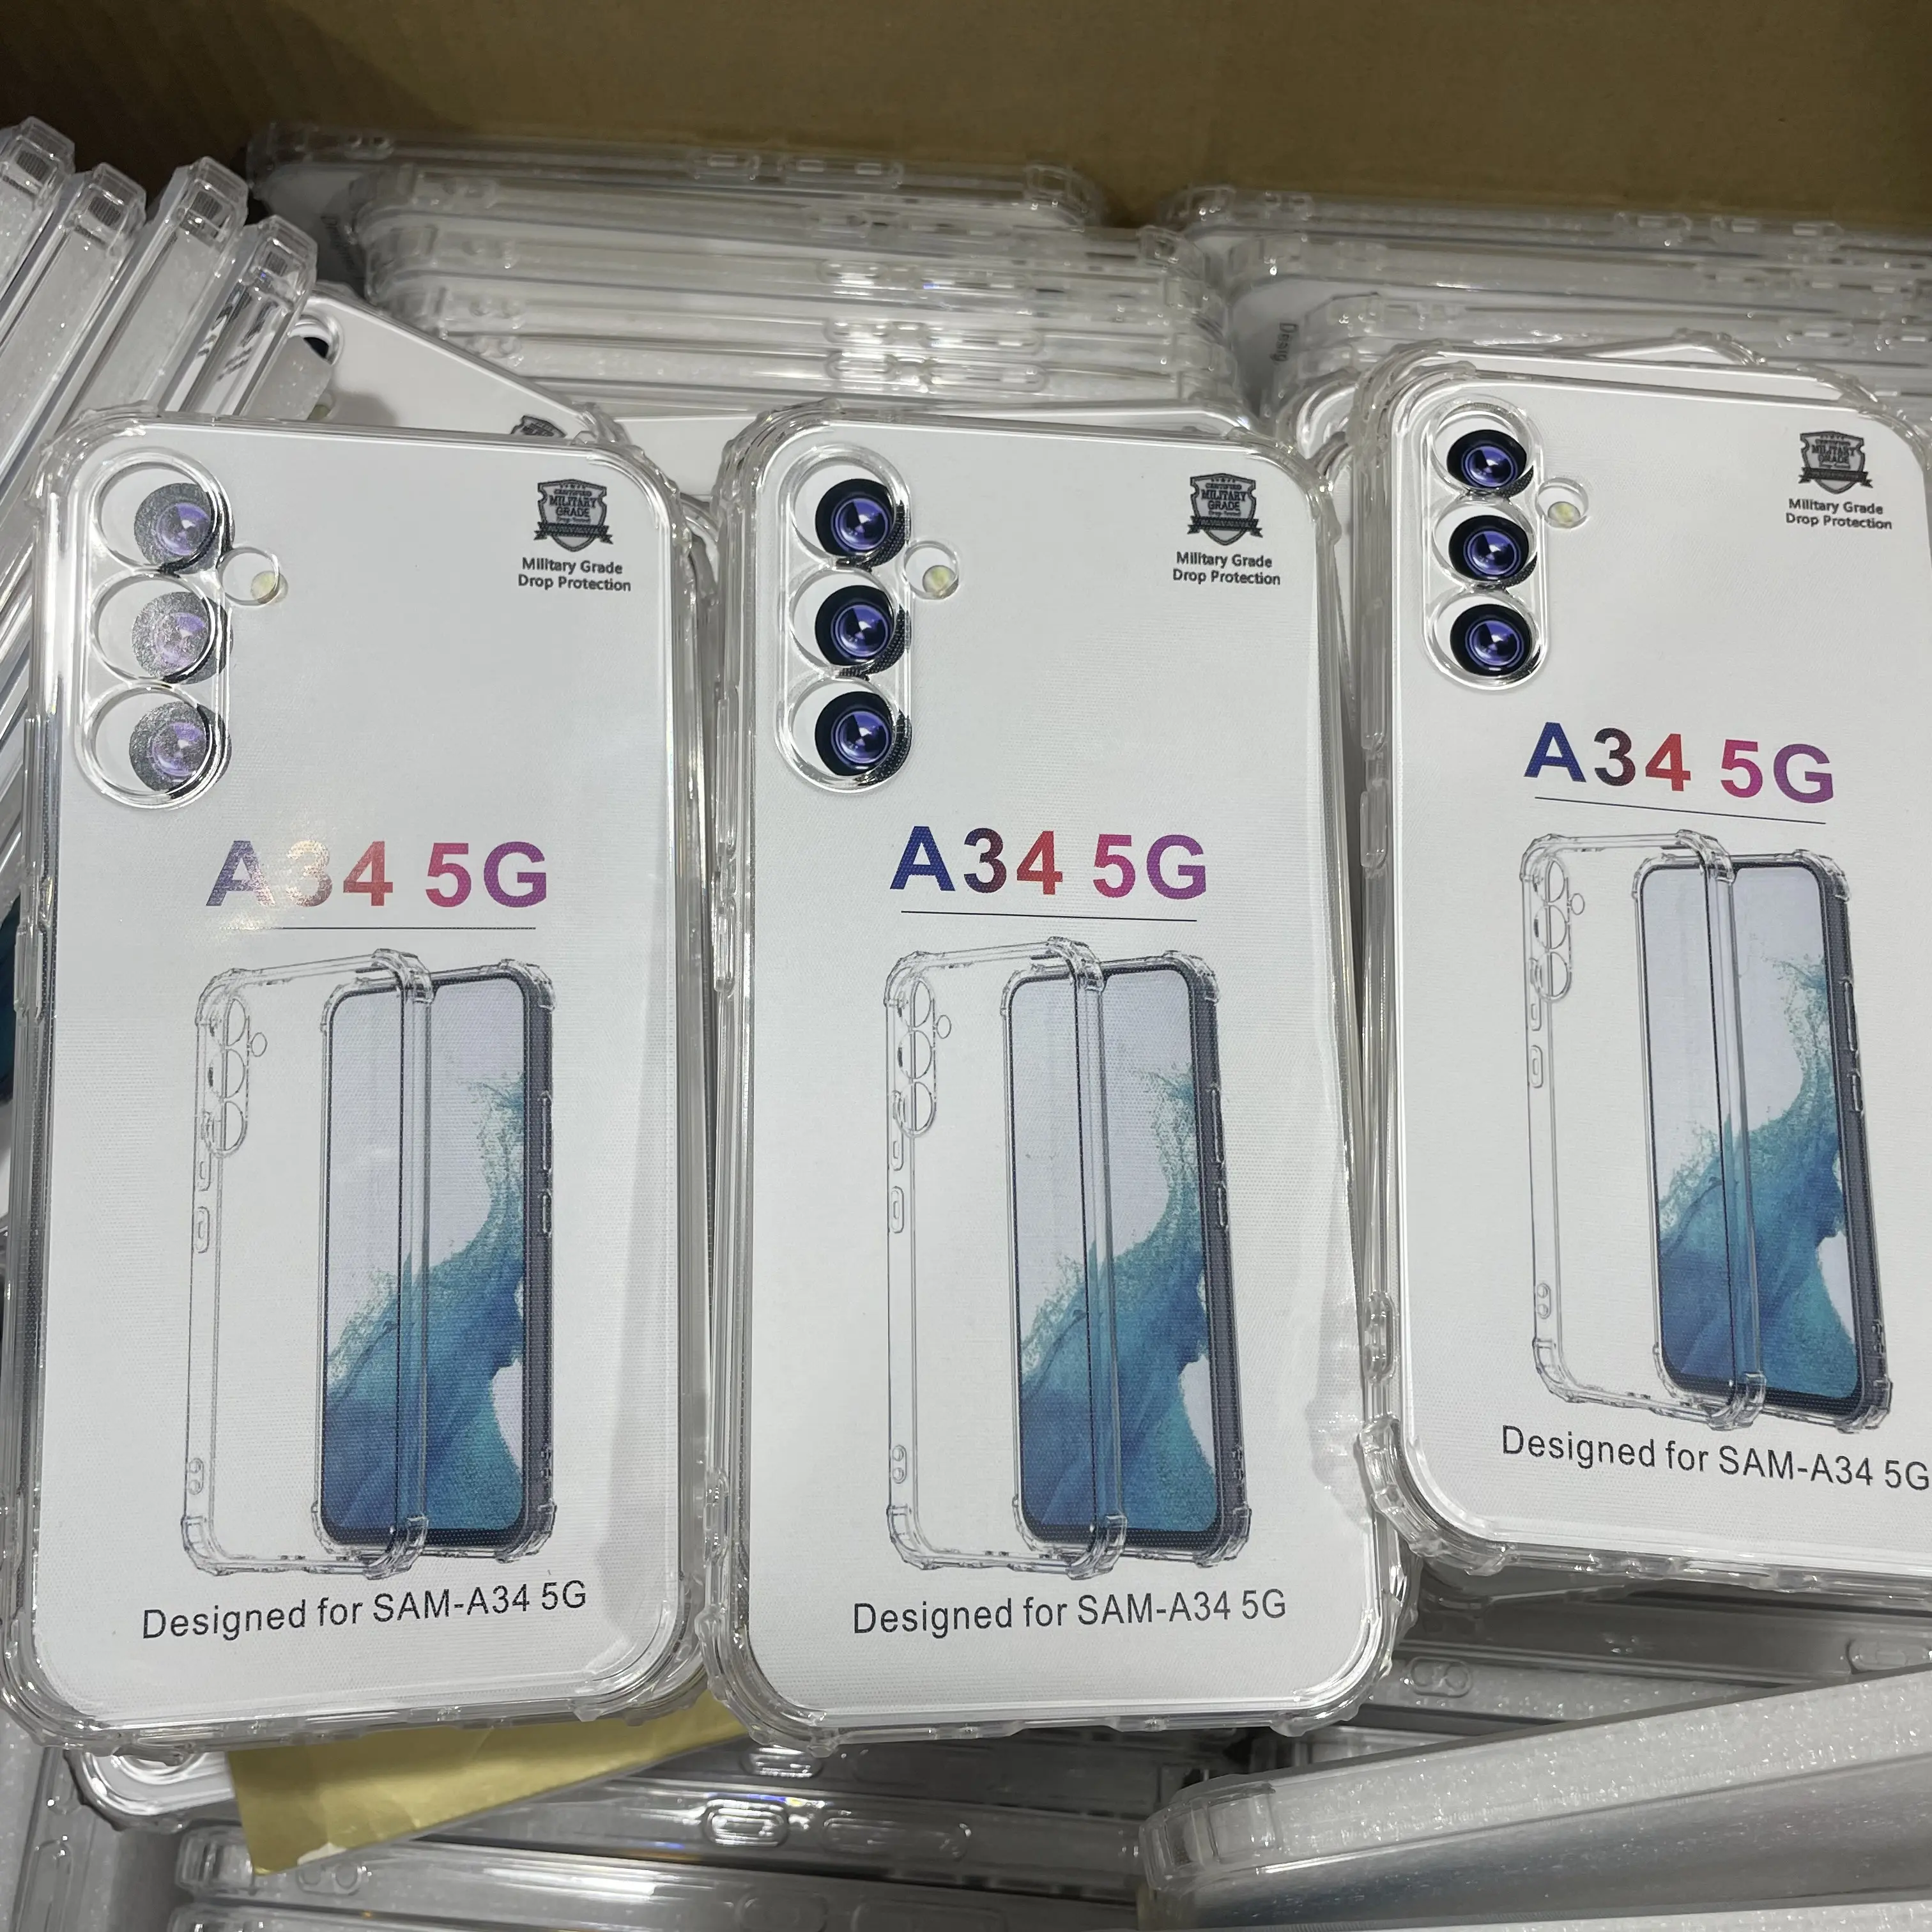 모든 종류의 재고 전화 케이스 삼성 갤럭시 A 시리즈 TPU 클리어 휴대 전화 케이스 파라 셀룰러 A34 5g 도매